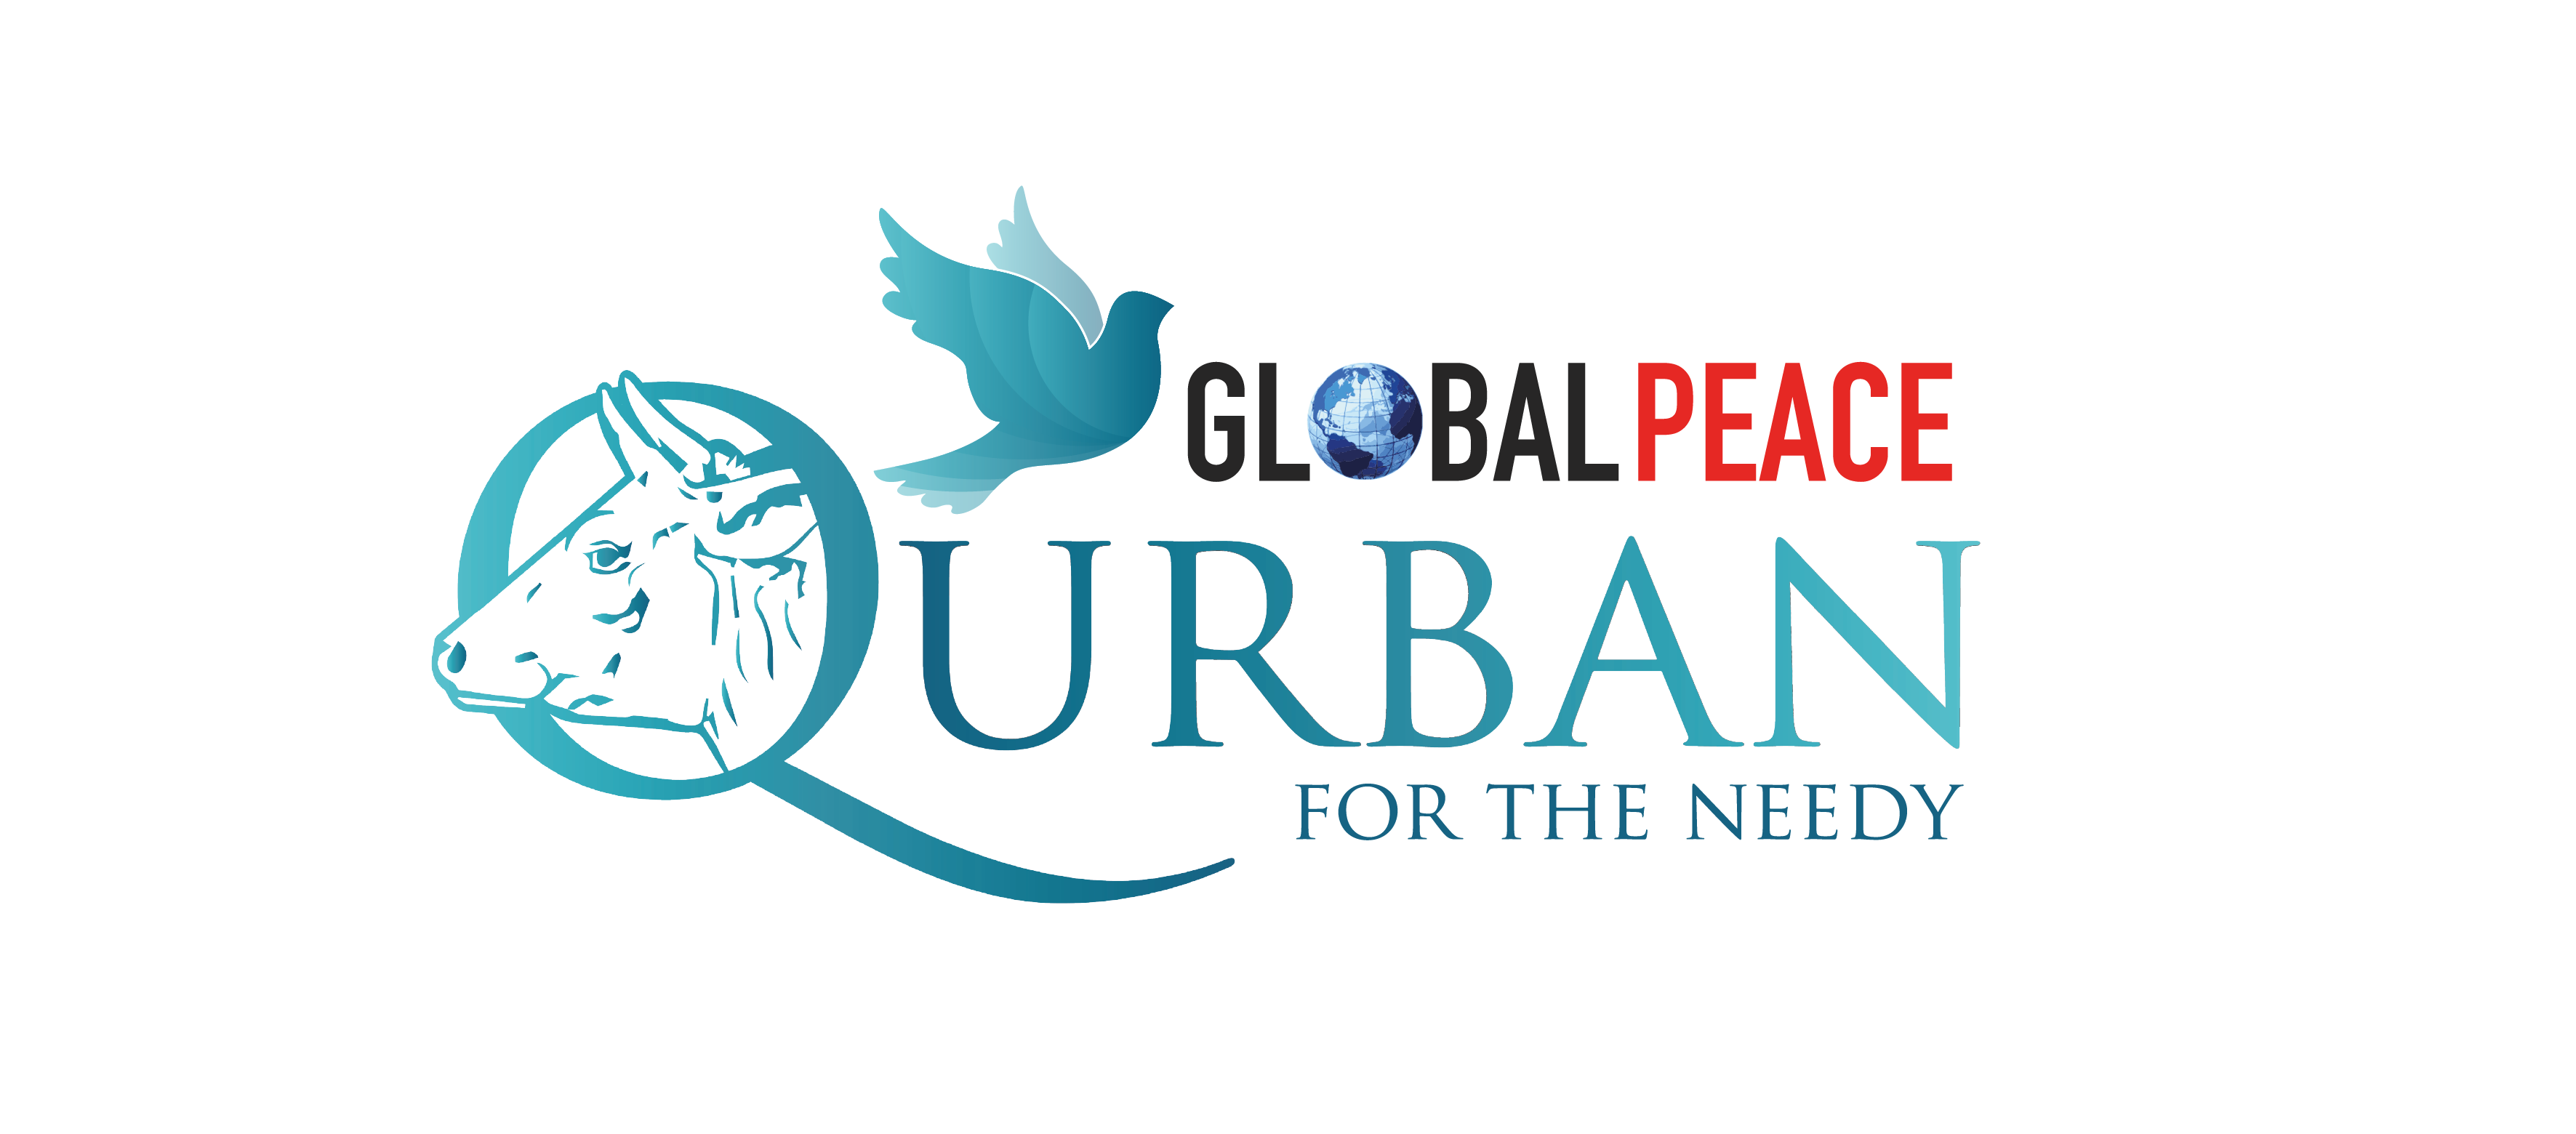 Laporan Qurban Tahun 2020 - Qurban Global Peace Mission